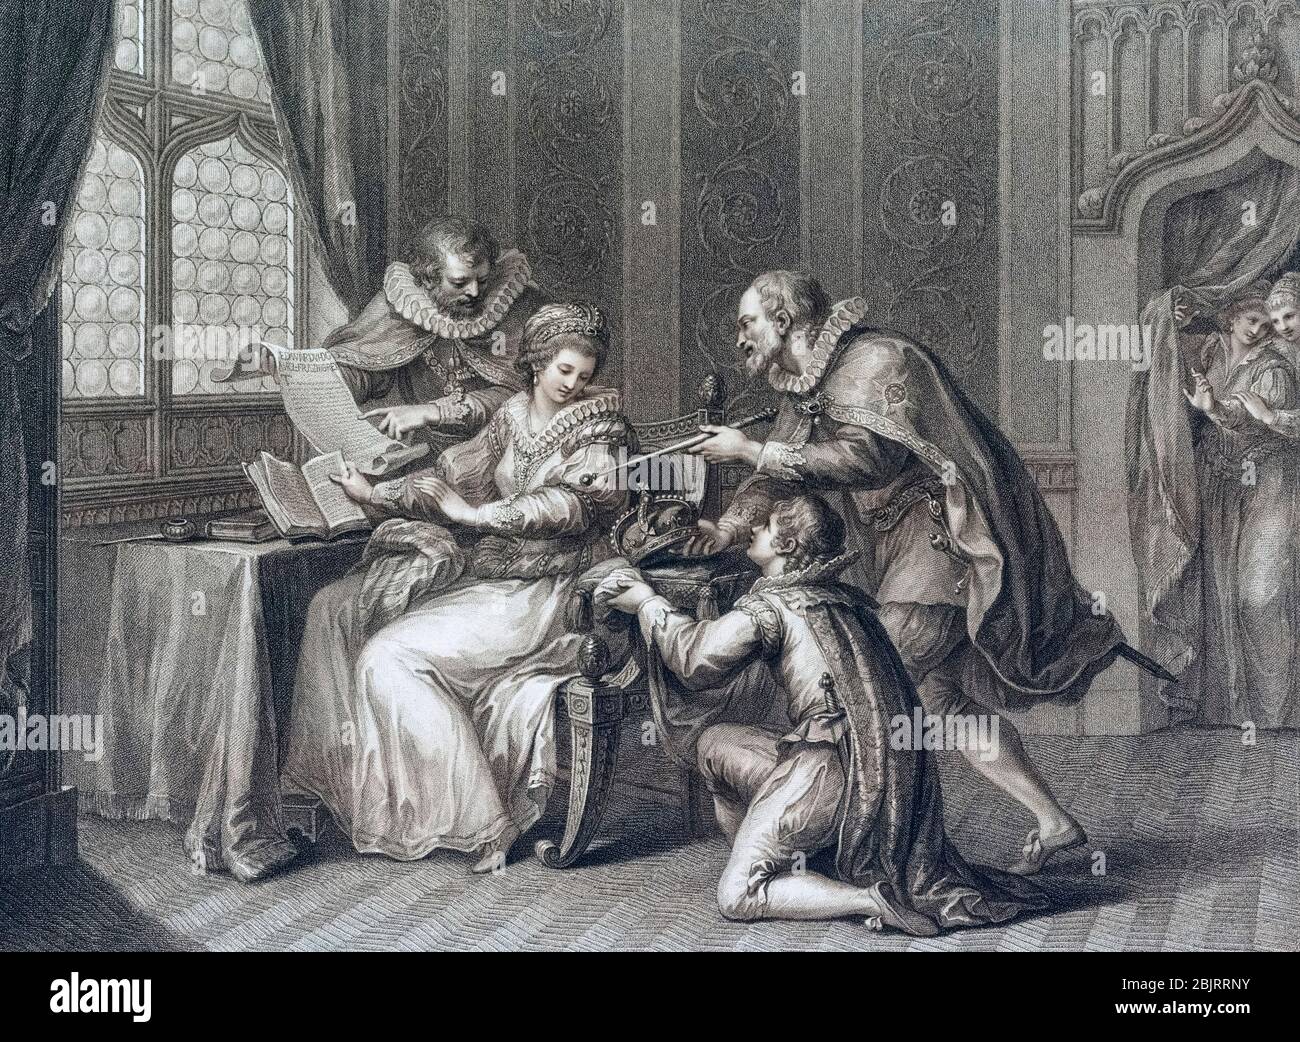 Los duques de Northumberland y Suffolk rezan a la Señora Jane Grey para aceptar la corona. De una impresión fechada en 1786 por Francesco Bartolozzi después de una obra de Giovanni Battista Cipriani. Foto de stock